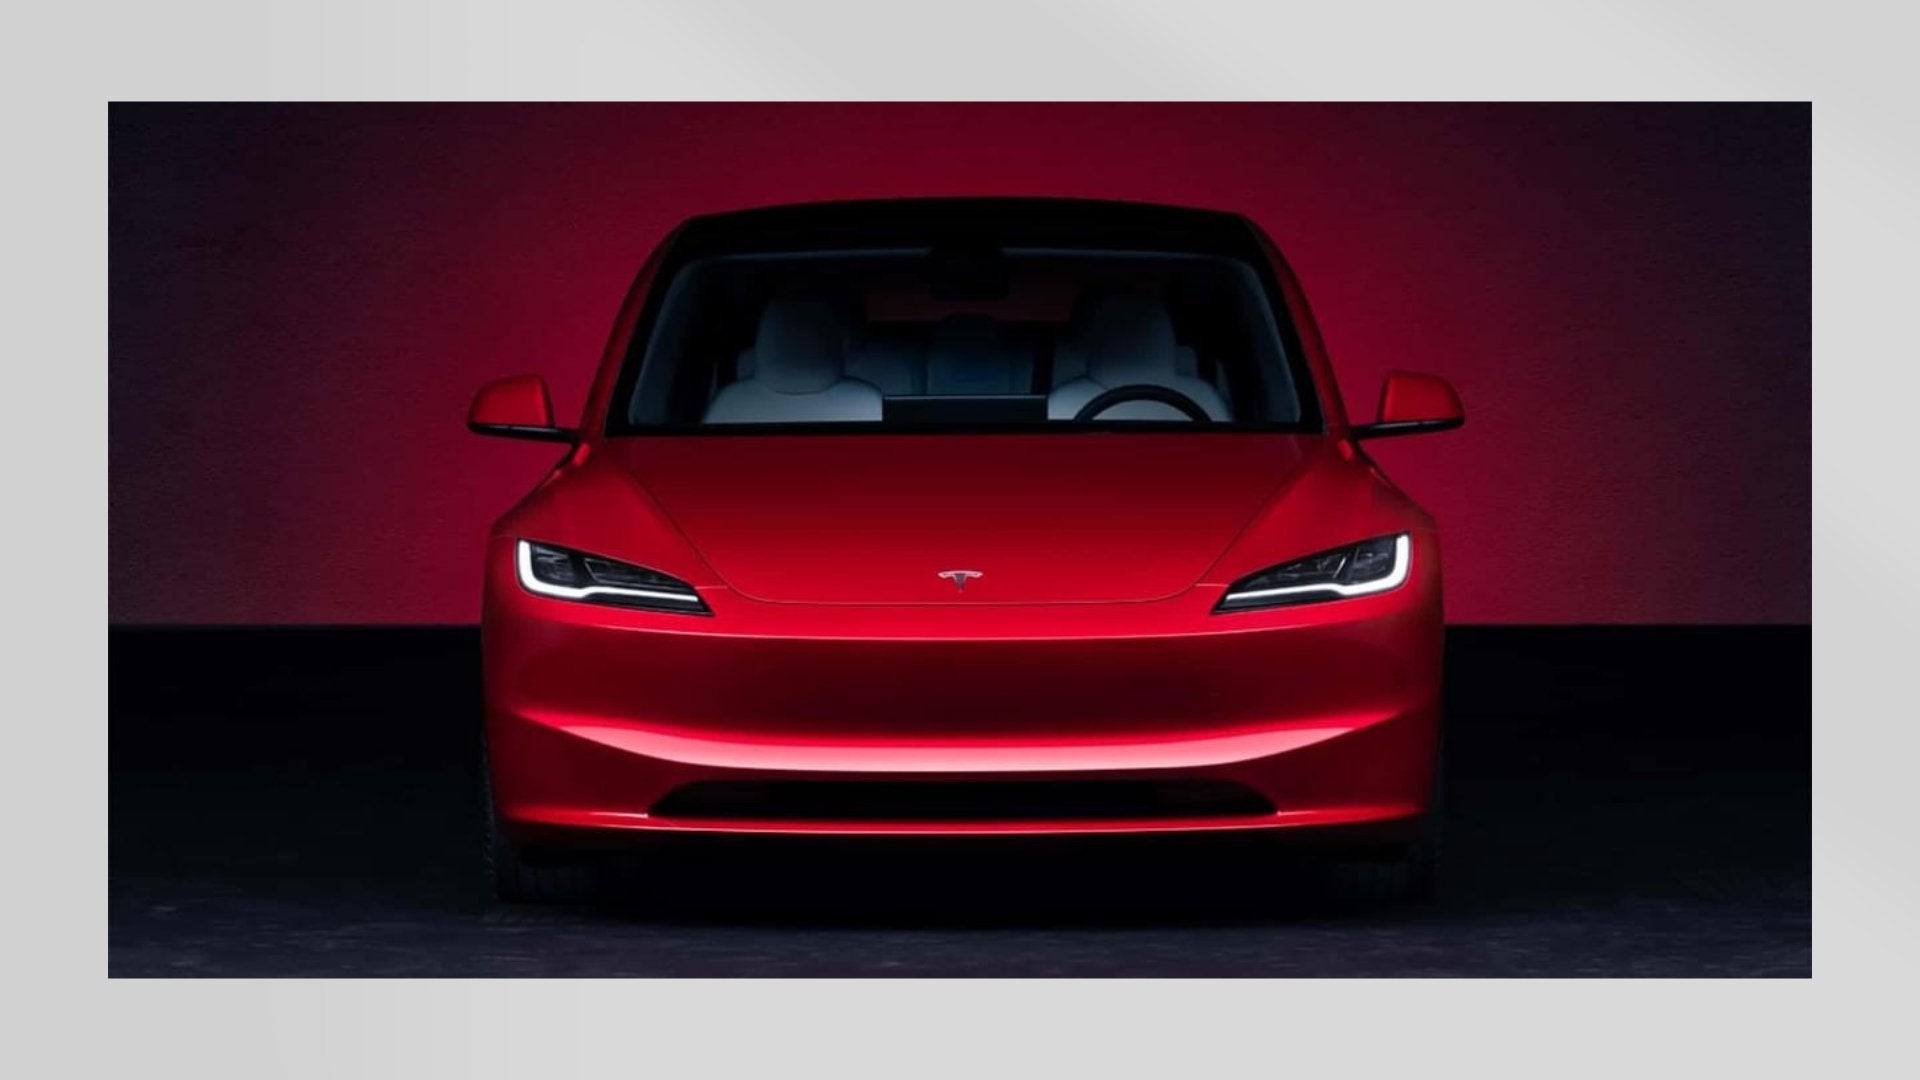 Mehr zum Update für Tesla Model 3: Foto von neuer Mittelkonsole >